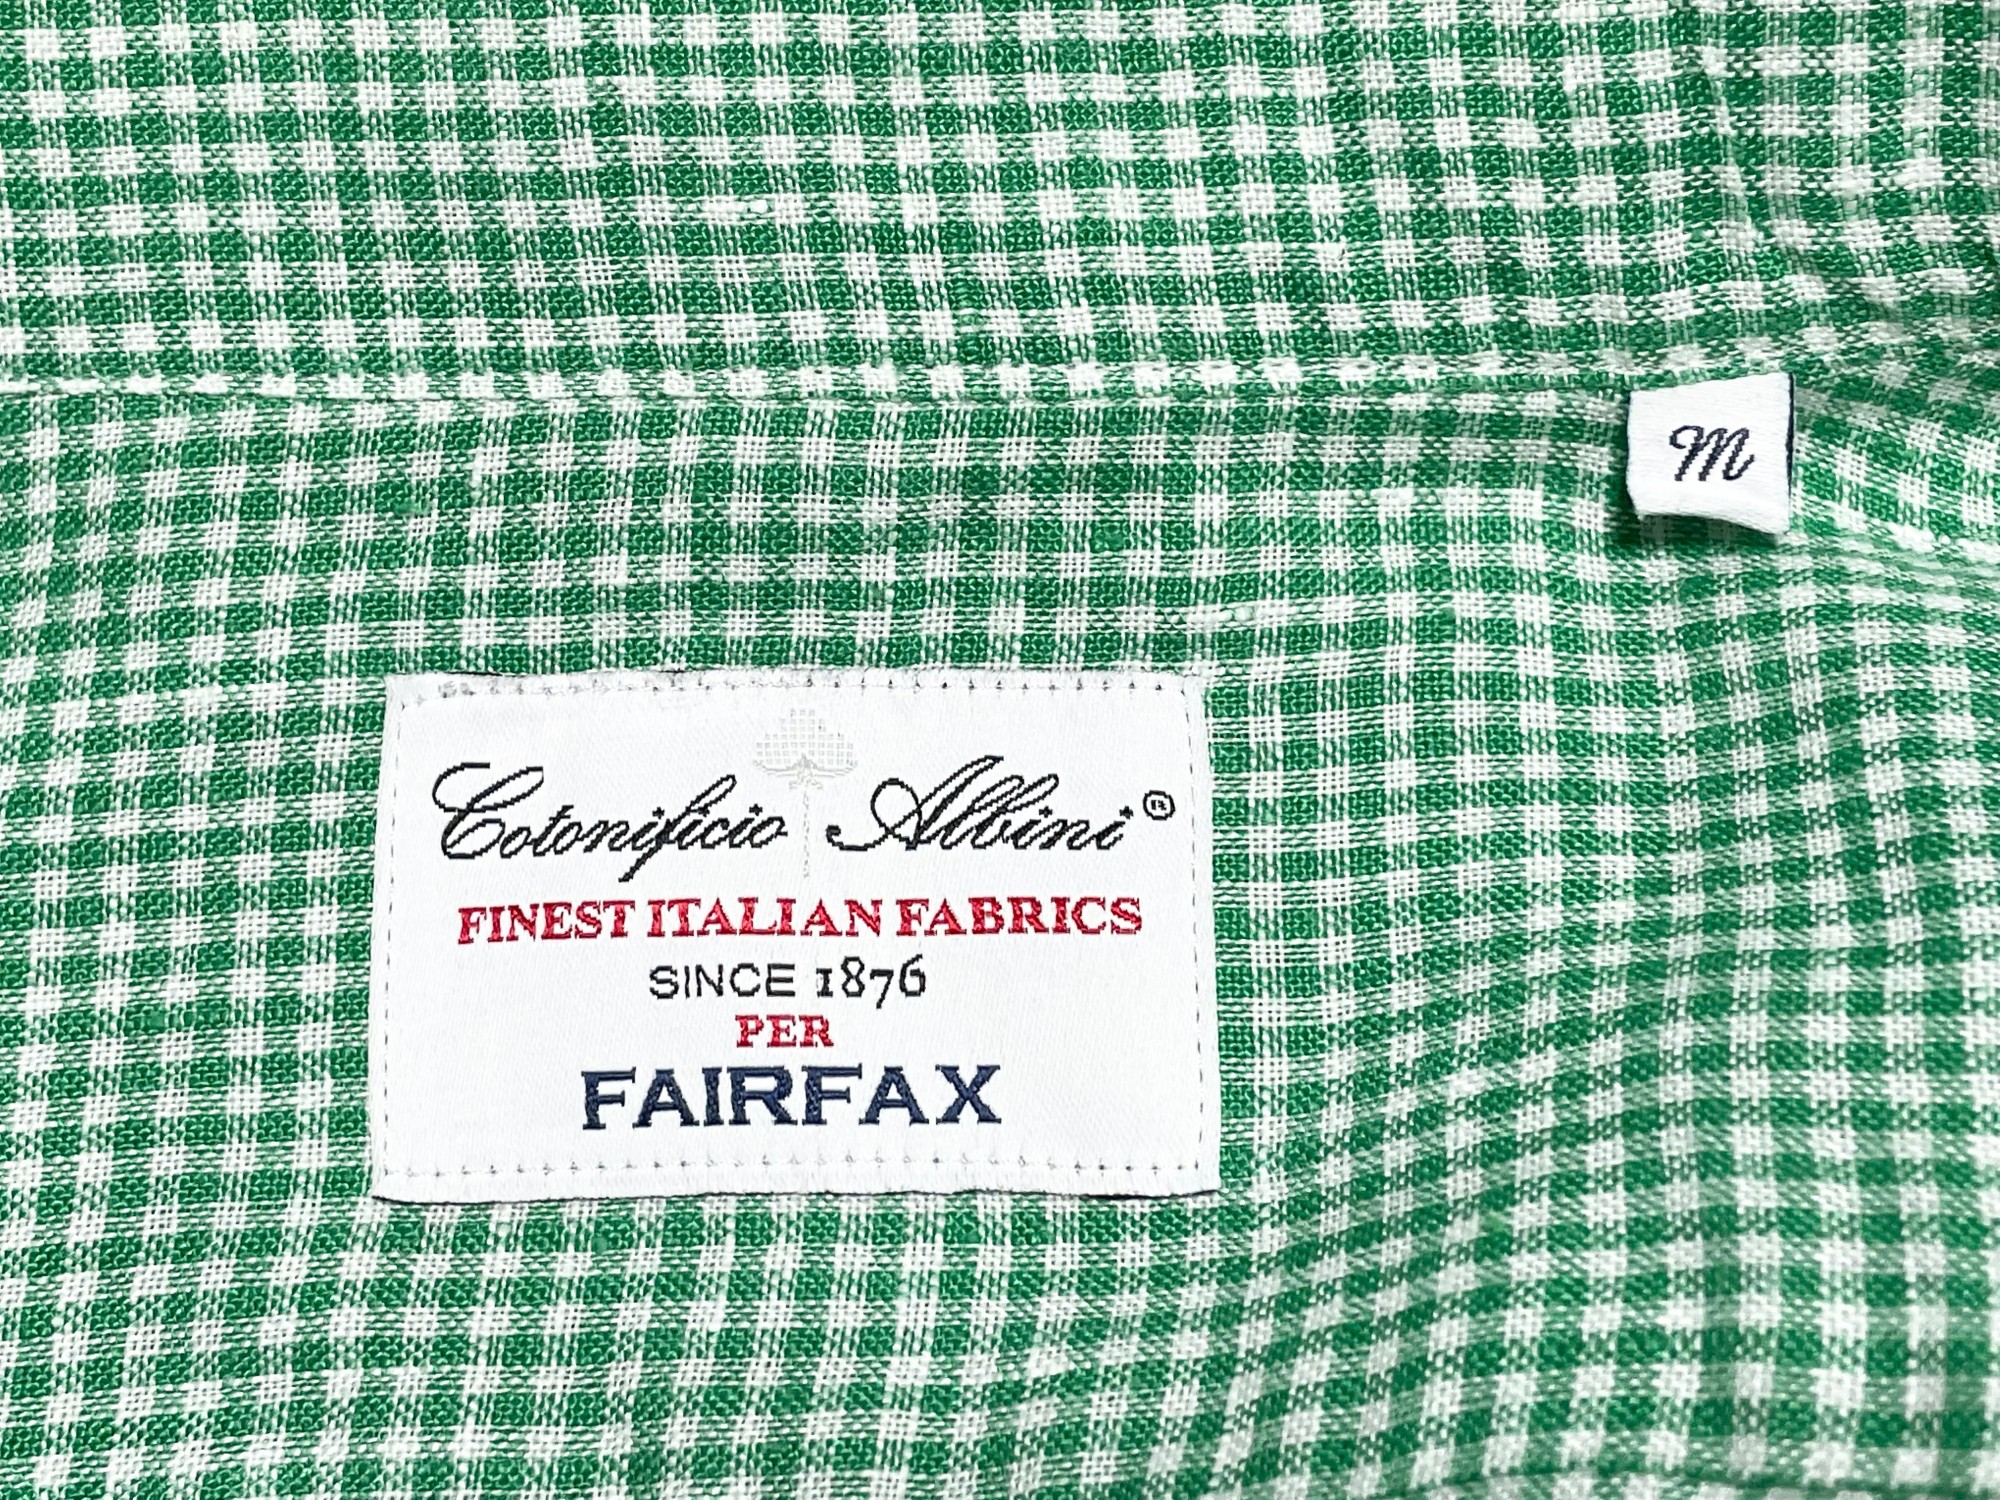 イタリア製生地 日本製 FAIRFAX 長袖ギンガムチェックシャツ グリーン M